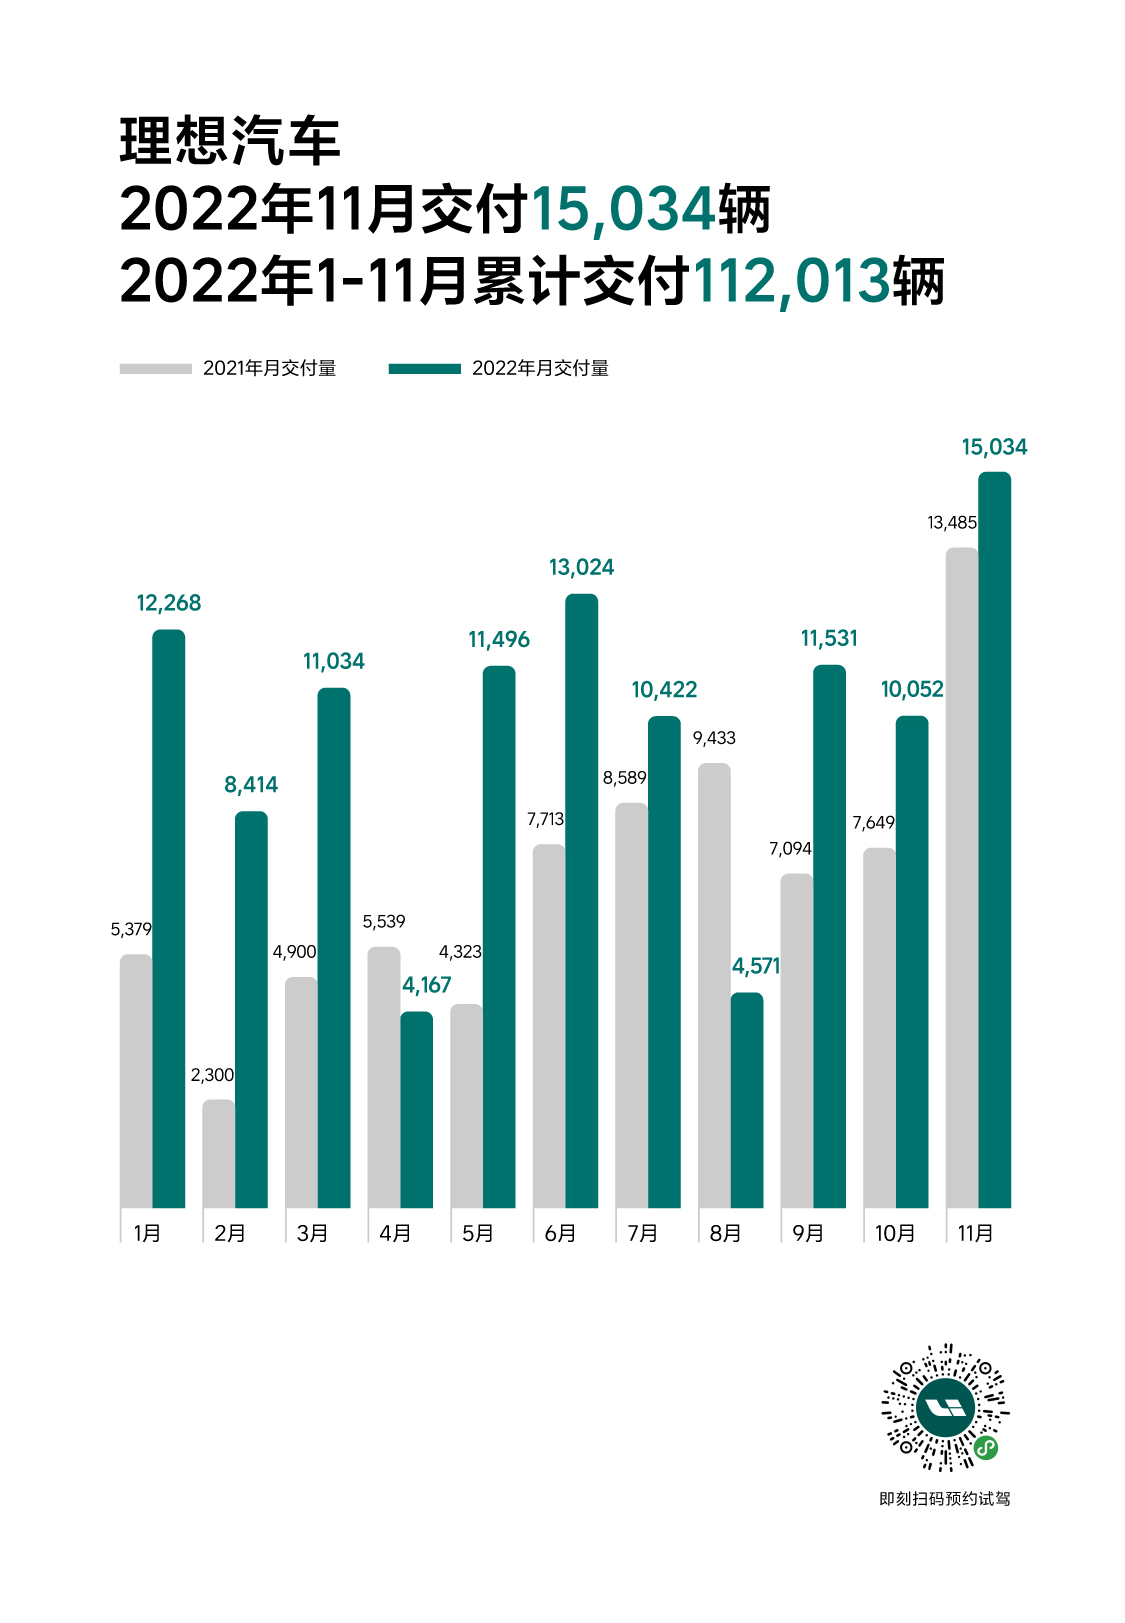 2022 11月官方发媒体销量图_1201_公关.jpg